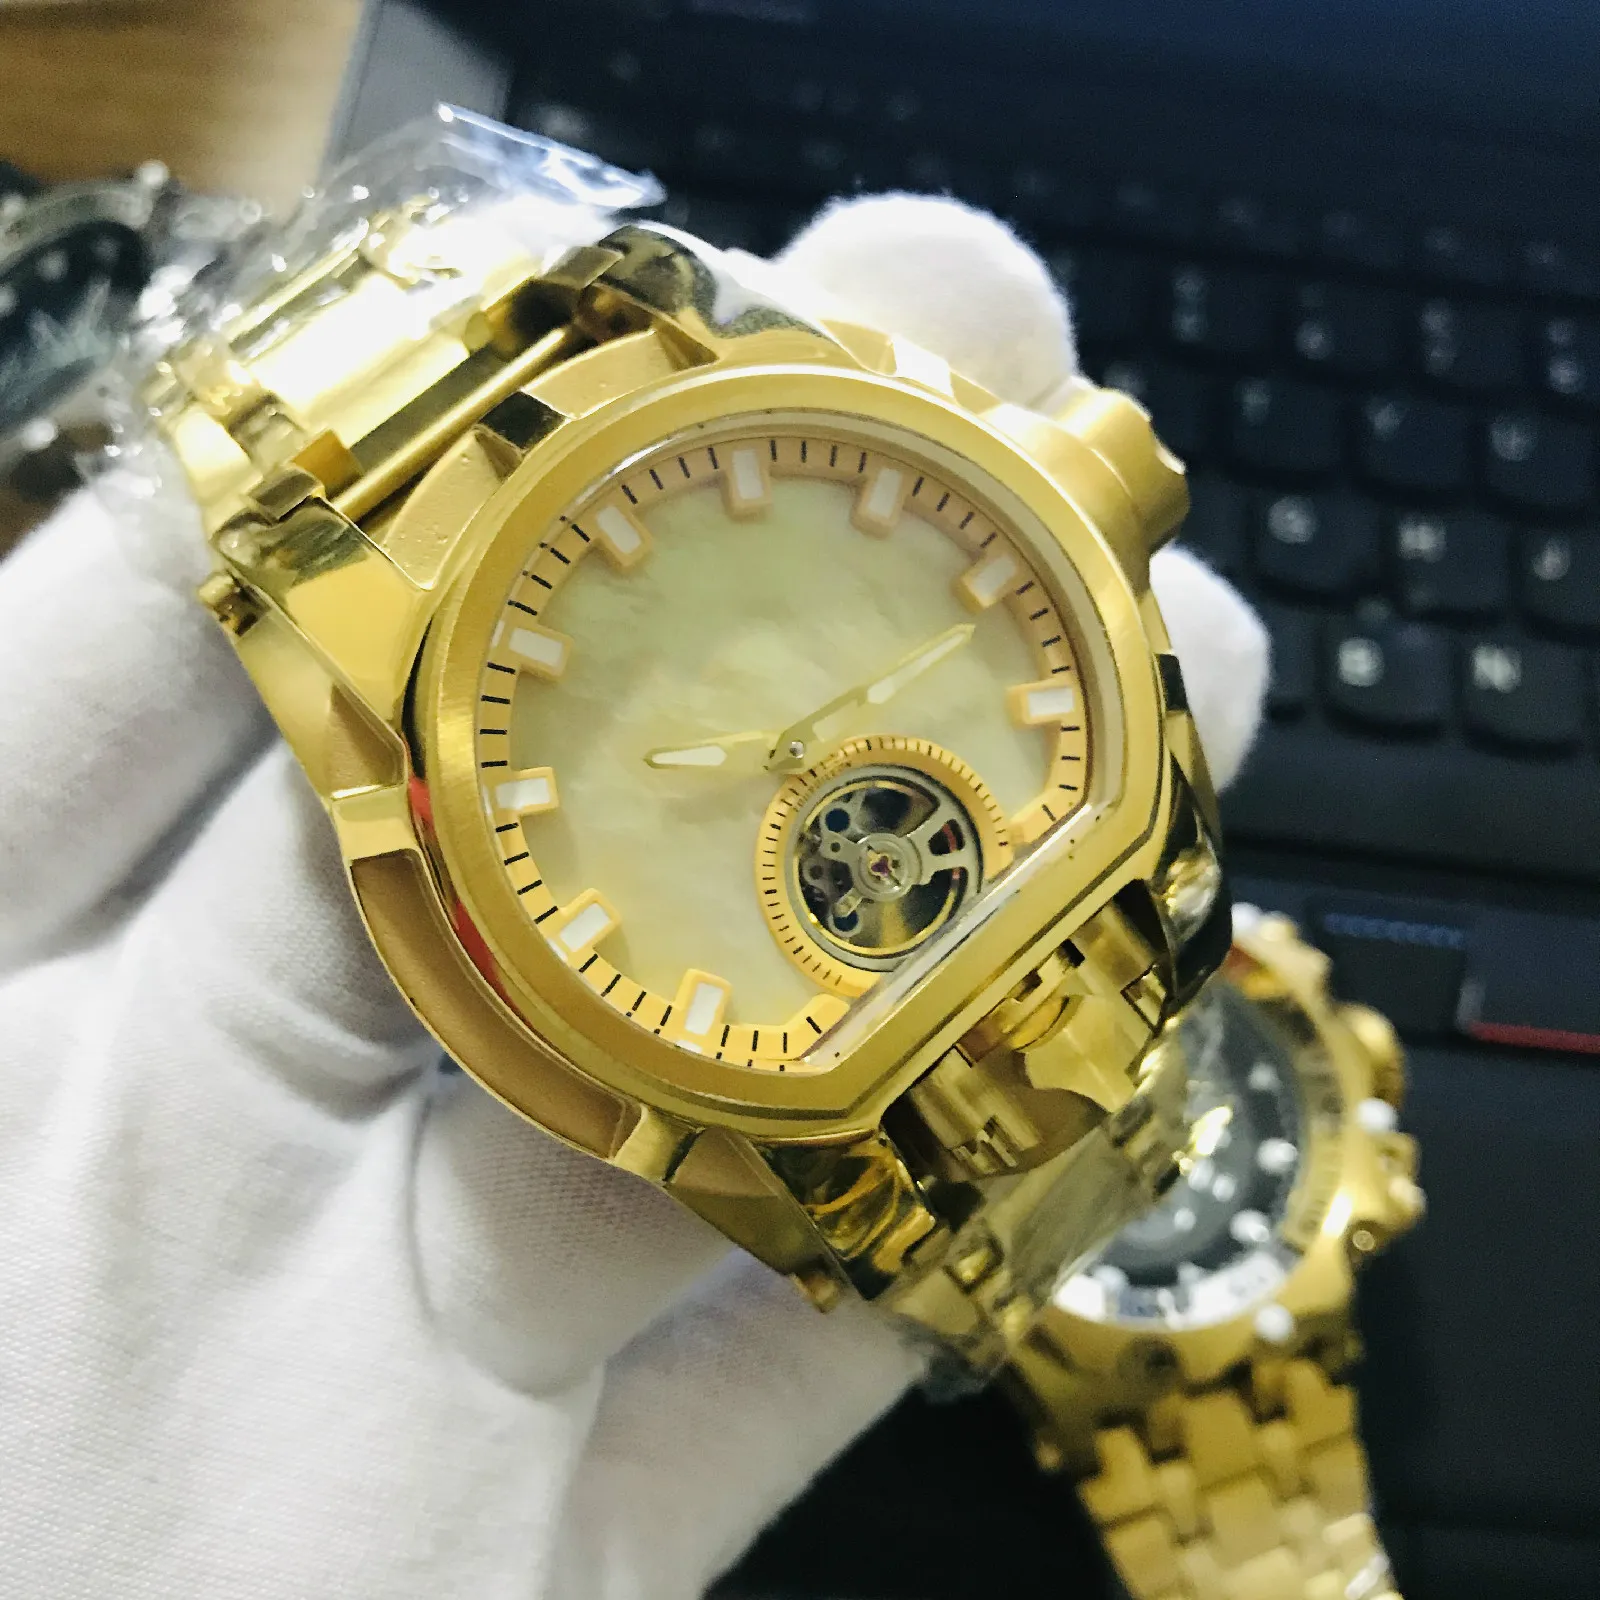 Modelo 28393 Reloj para hombre Mecánico Cuarzo Reserva Perno Zeus Hombres 52 mm Acero inoxidable Doble zona horaria Reloj de pulsera dorado 224D